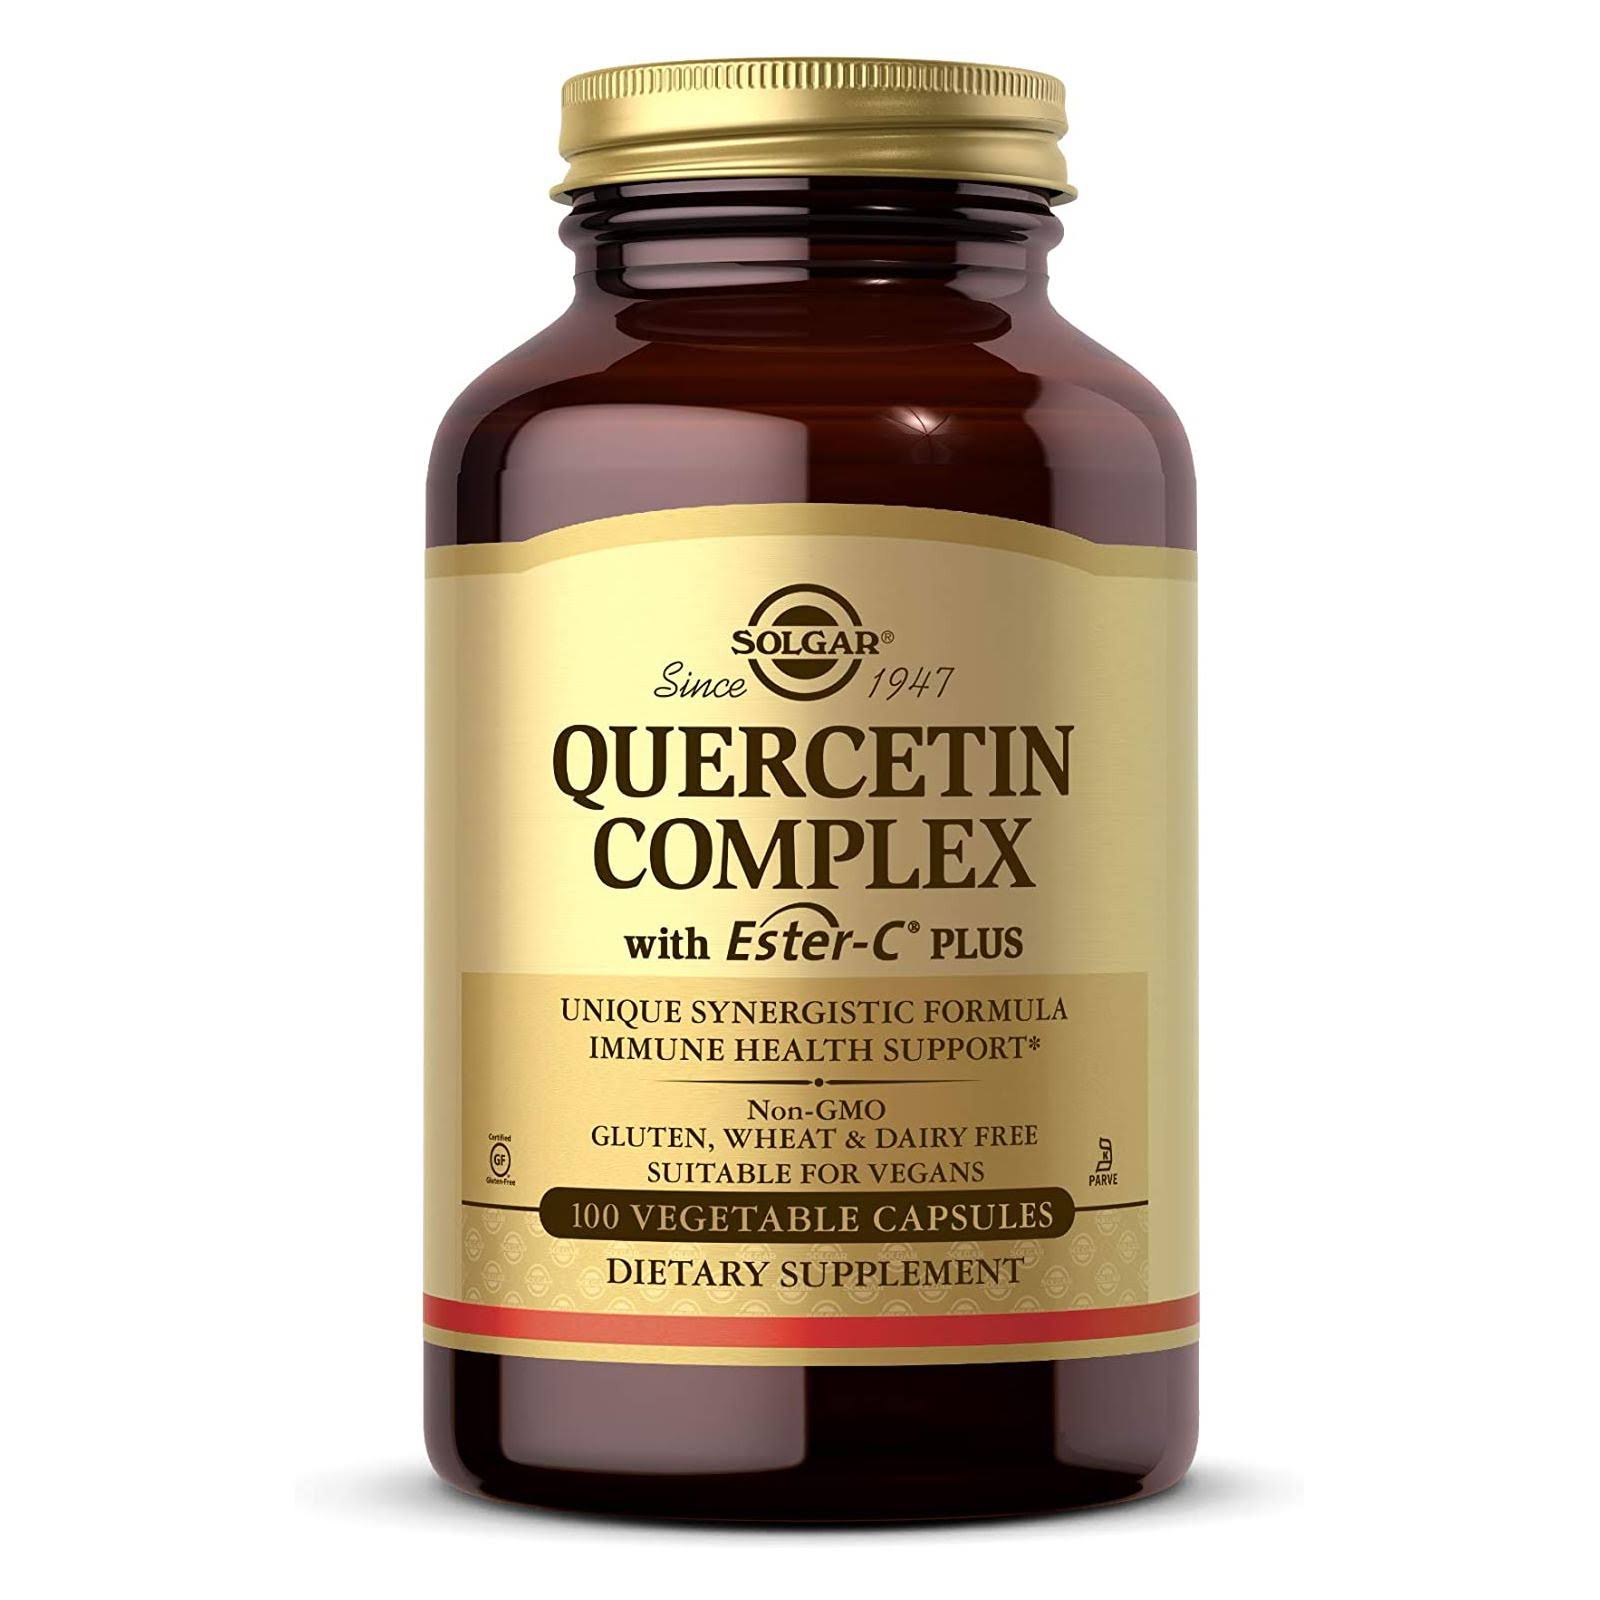 Solgar Quercetin Complex Plus Ester-C Plus Vegetable Capsules